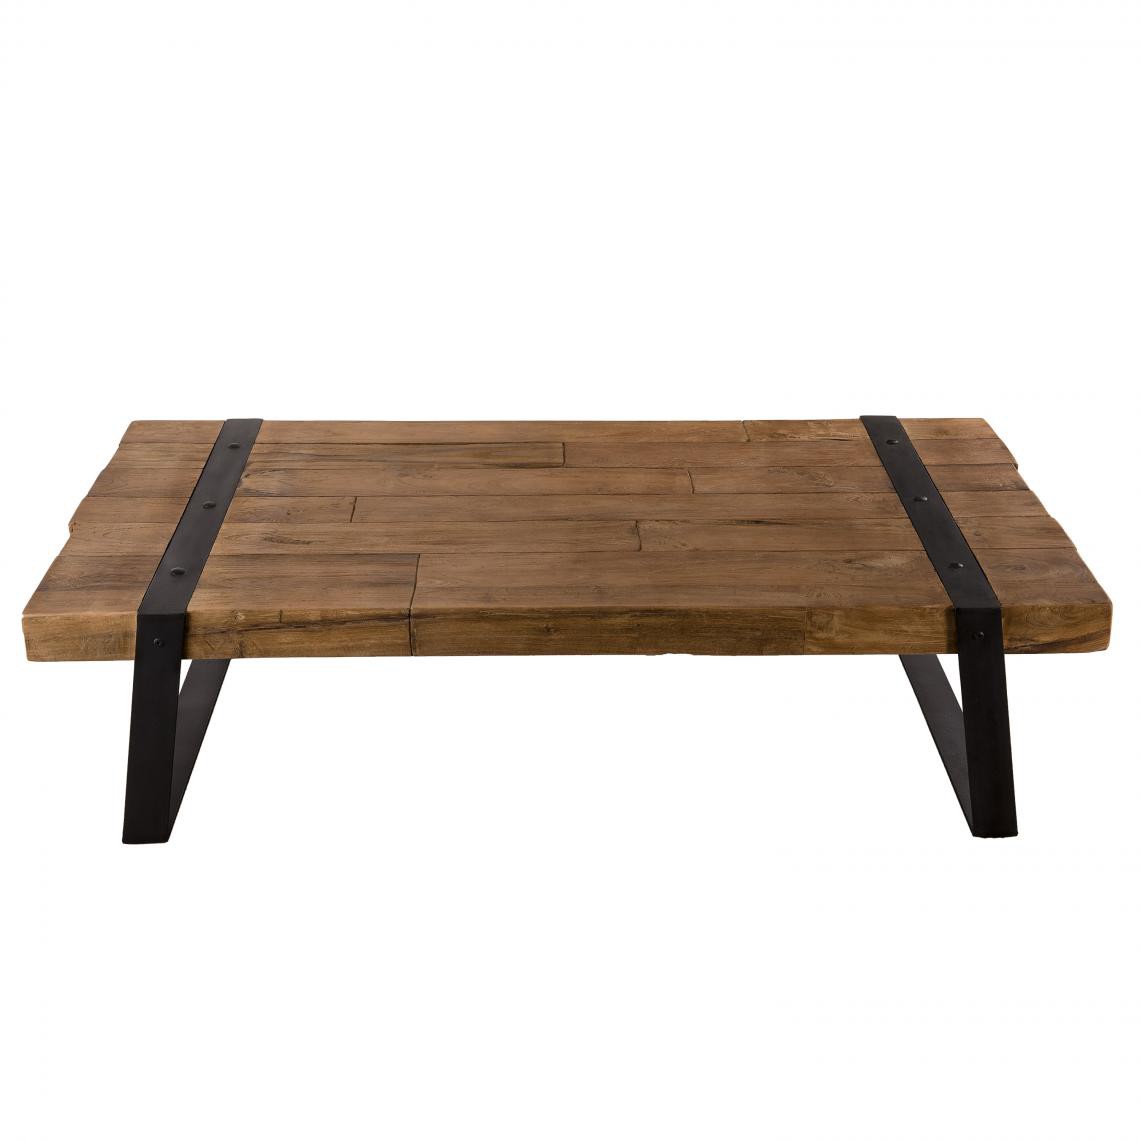 MACABANE - Table basse rectangulaire bois de Teck recyclé et métal - SIANA - Tables basses